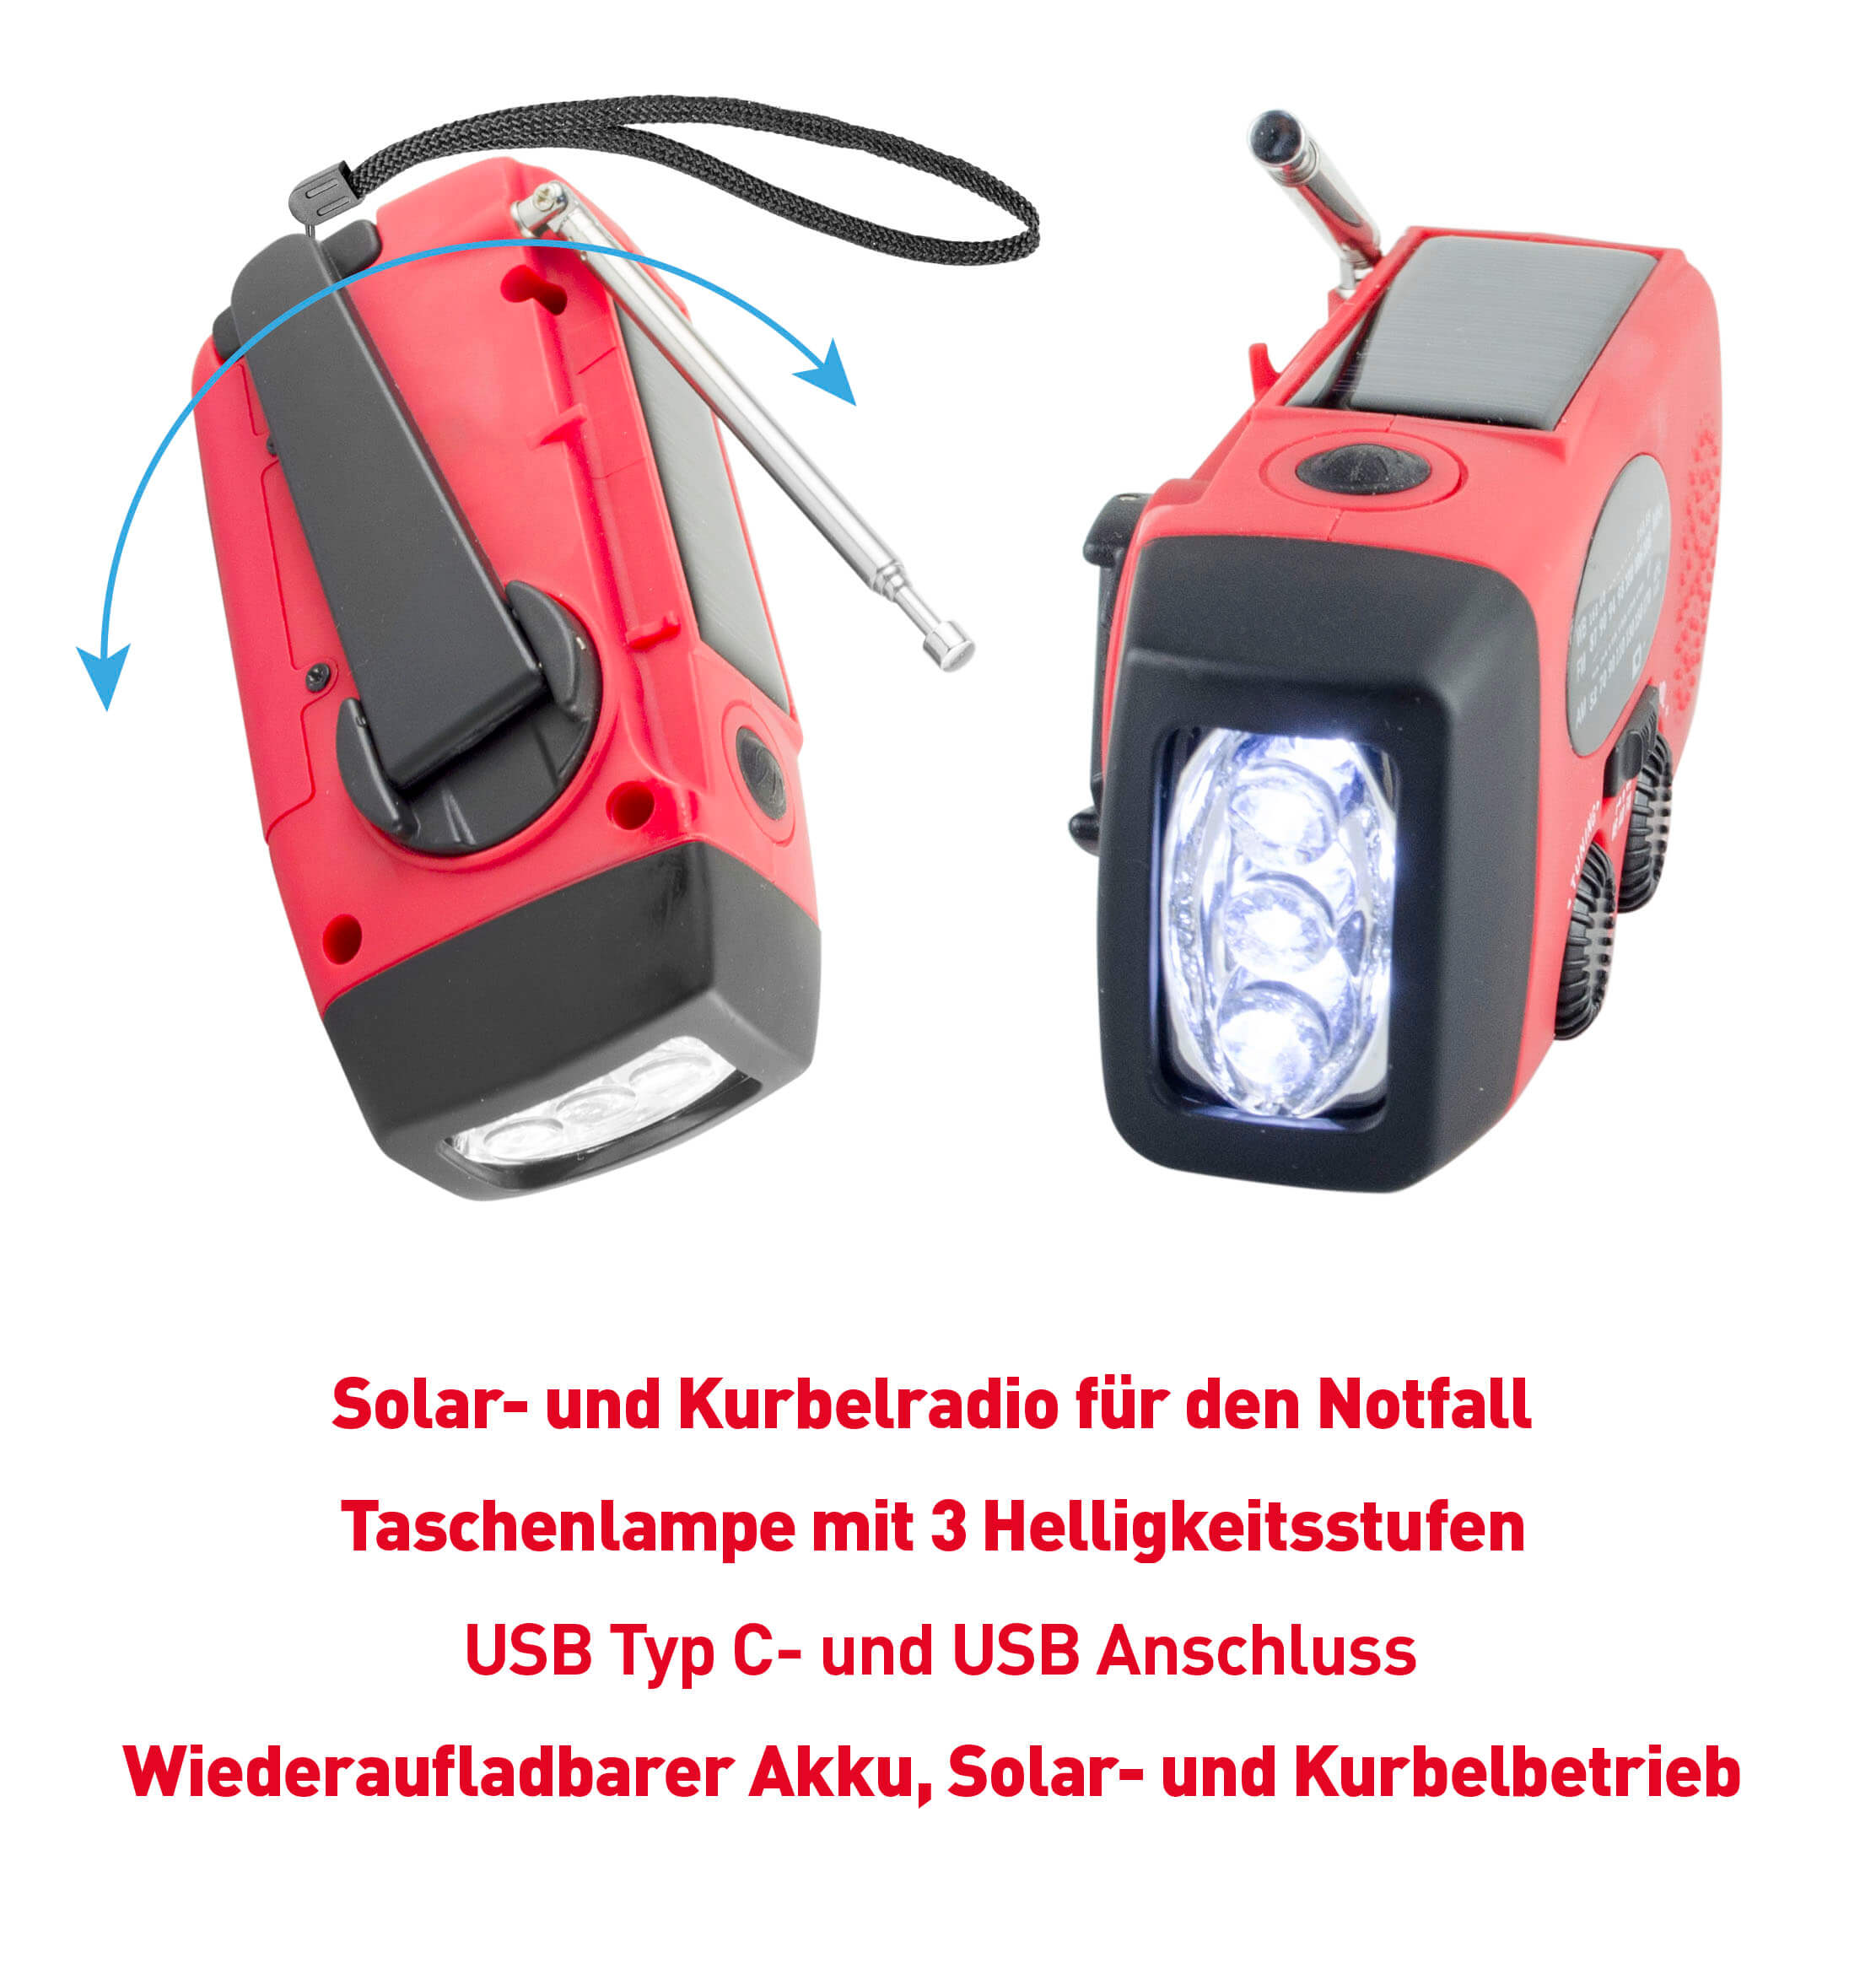 FM/AM Solar-Kurbelradio mit 1W Taschenlampe und Notfallalarm, IPX3 wiederaufladbar USB/Solarpanel/Kurbel